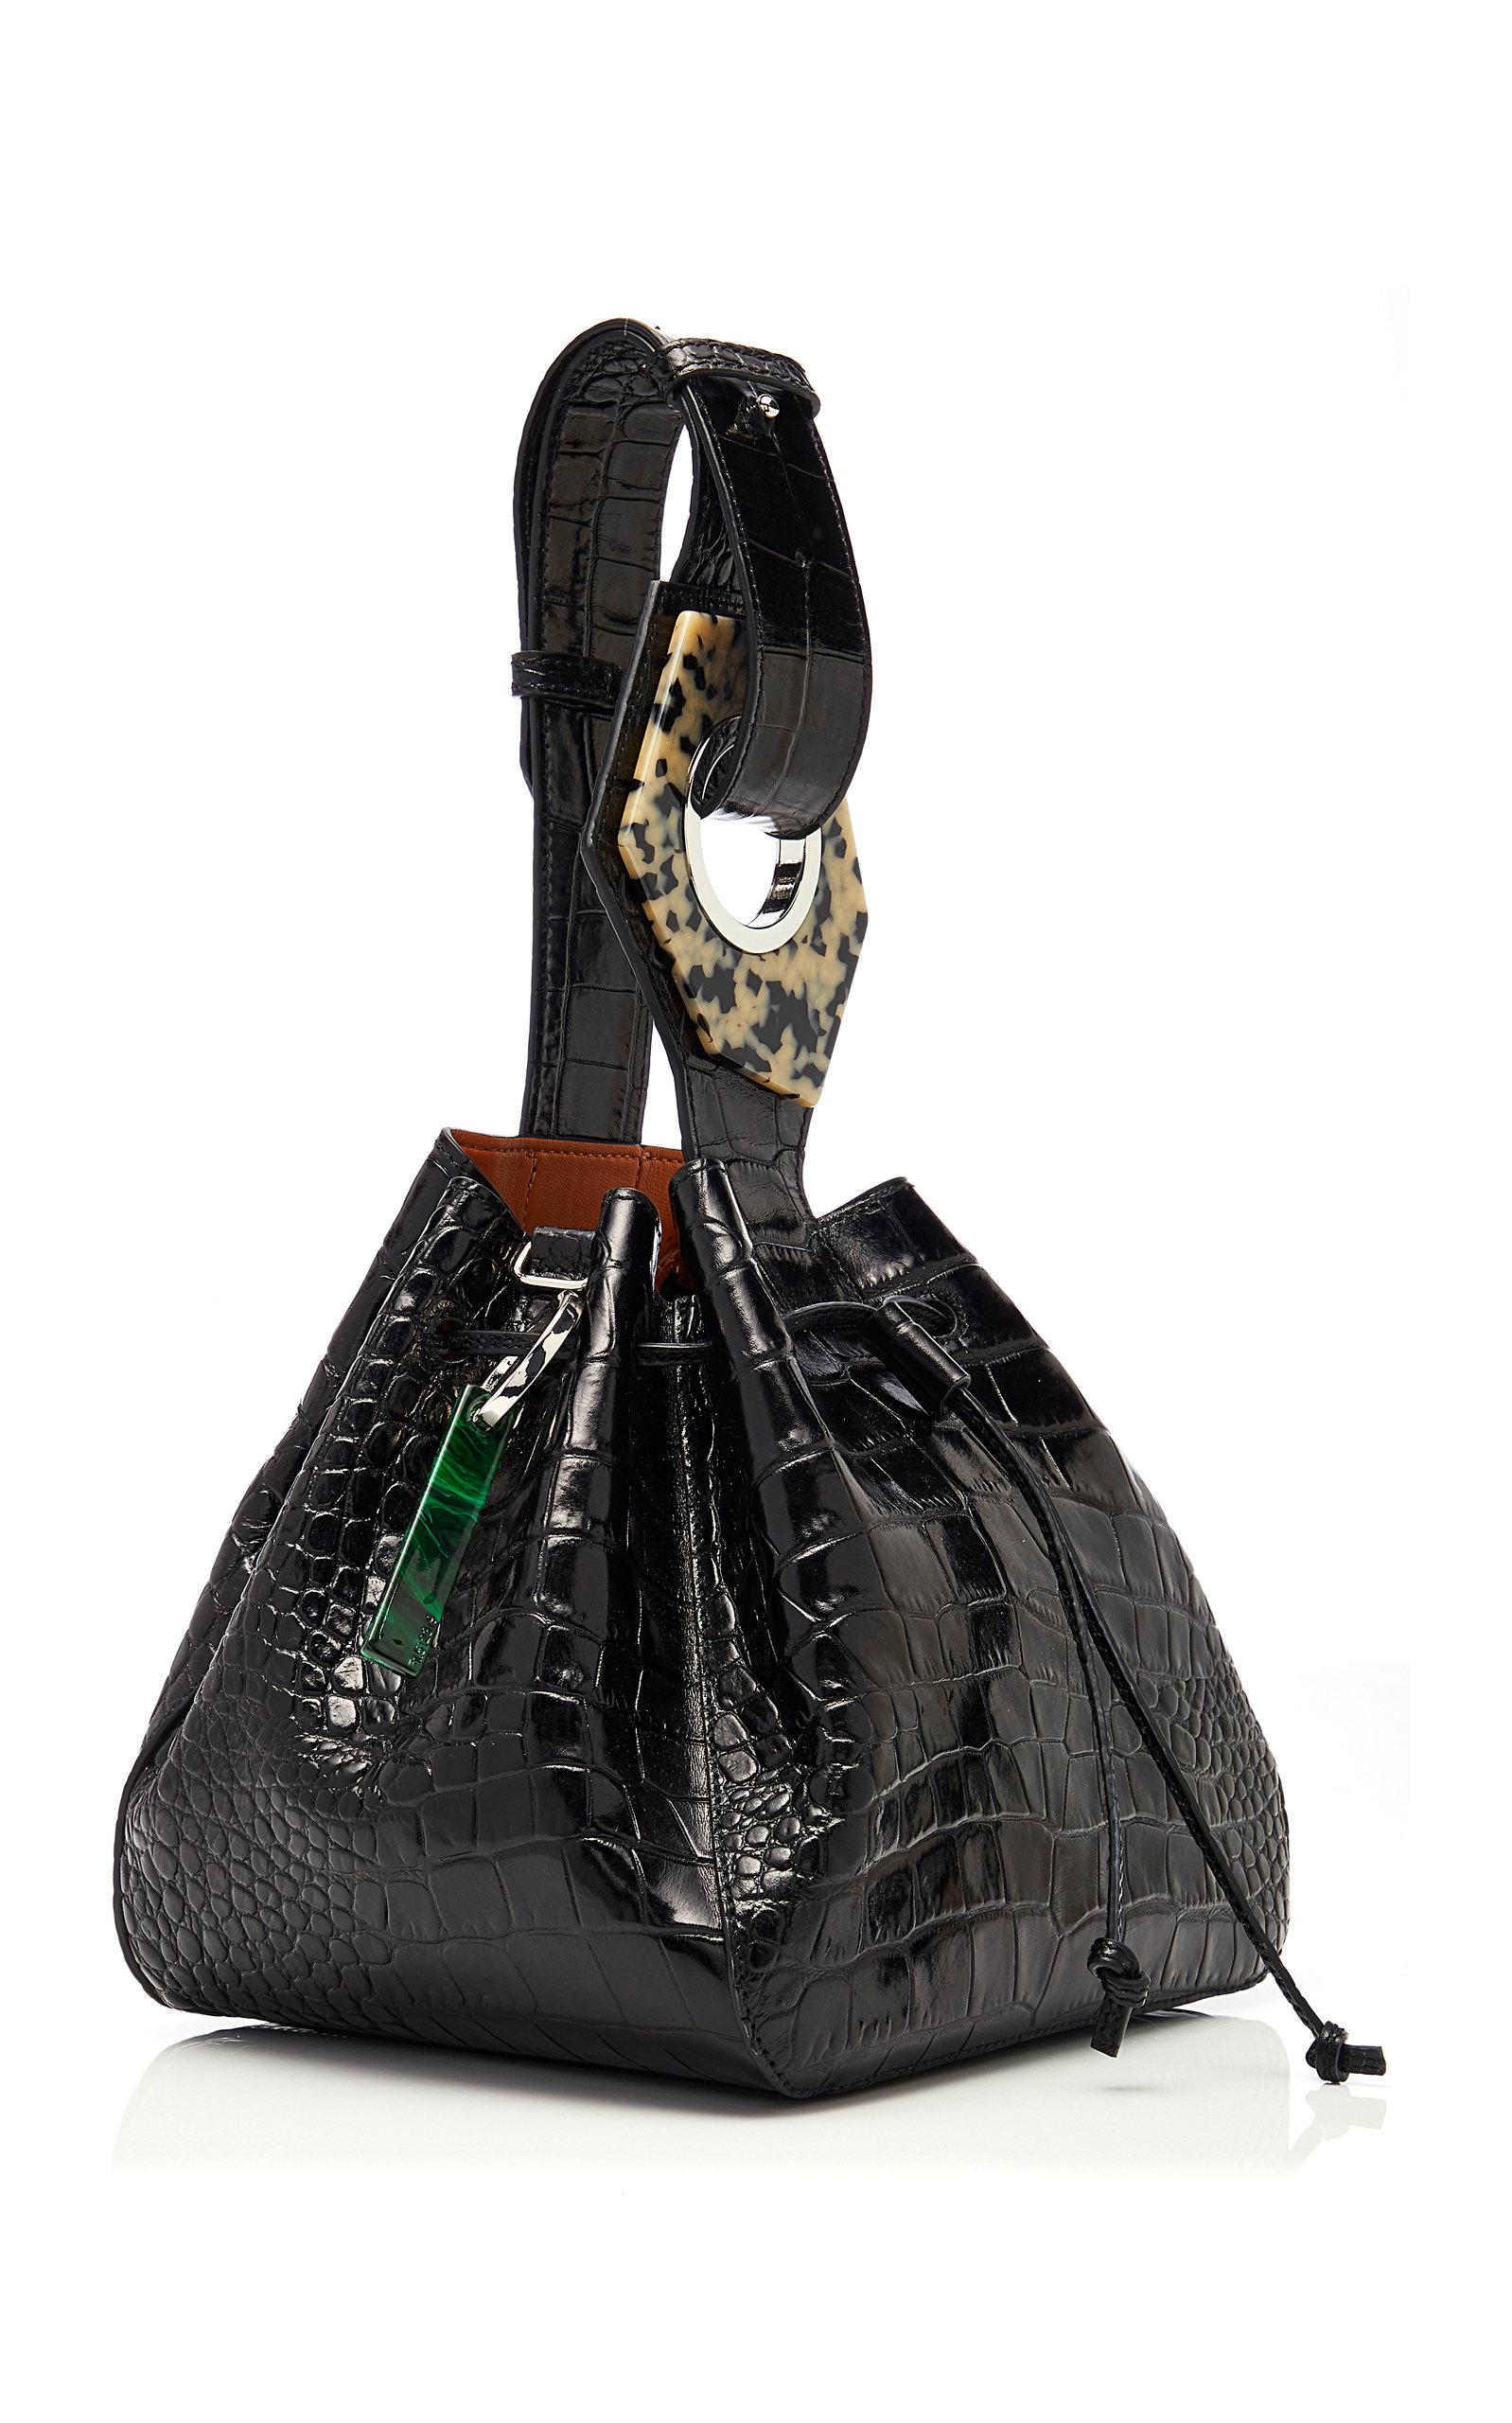 Ganni Resin-embellished Croc-effect Leather Bucket Bag in Black - Lyst